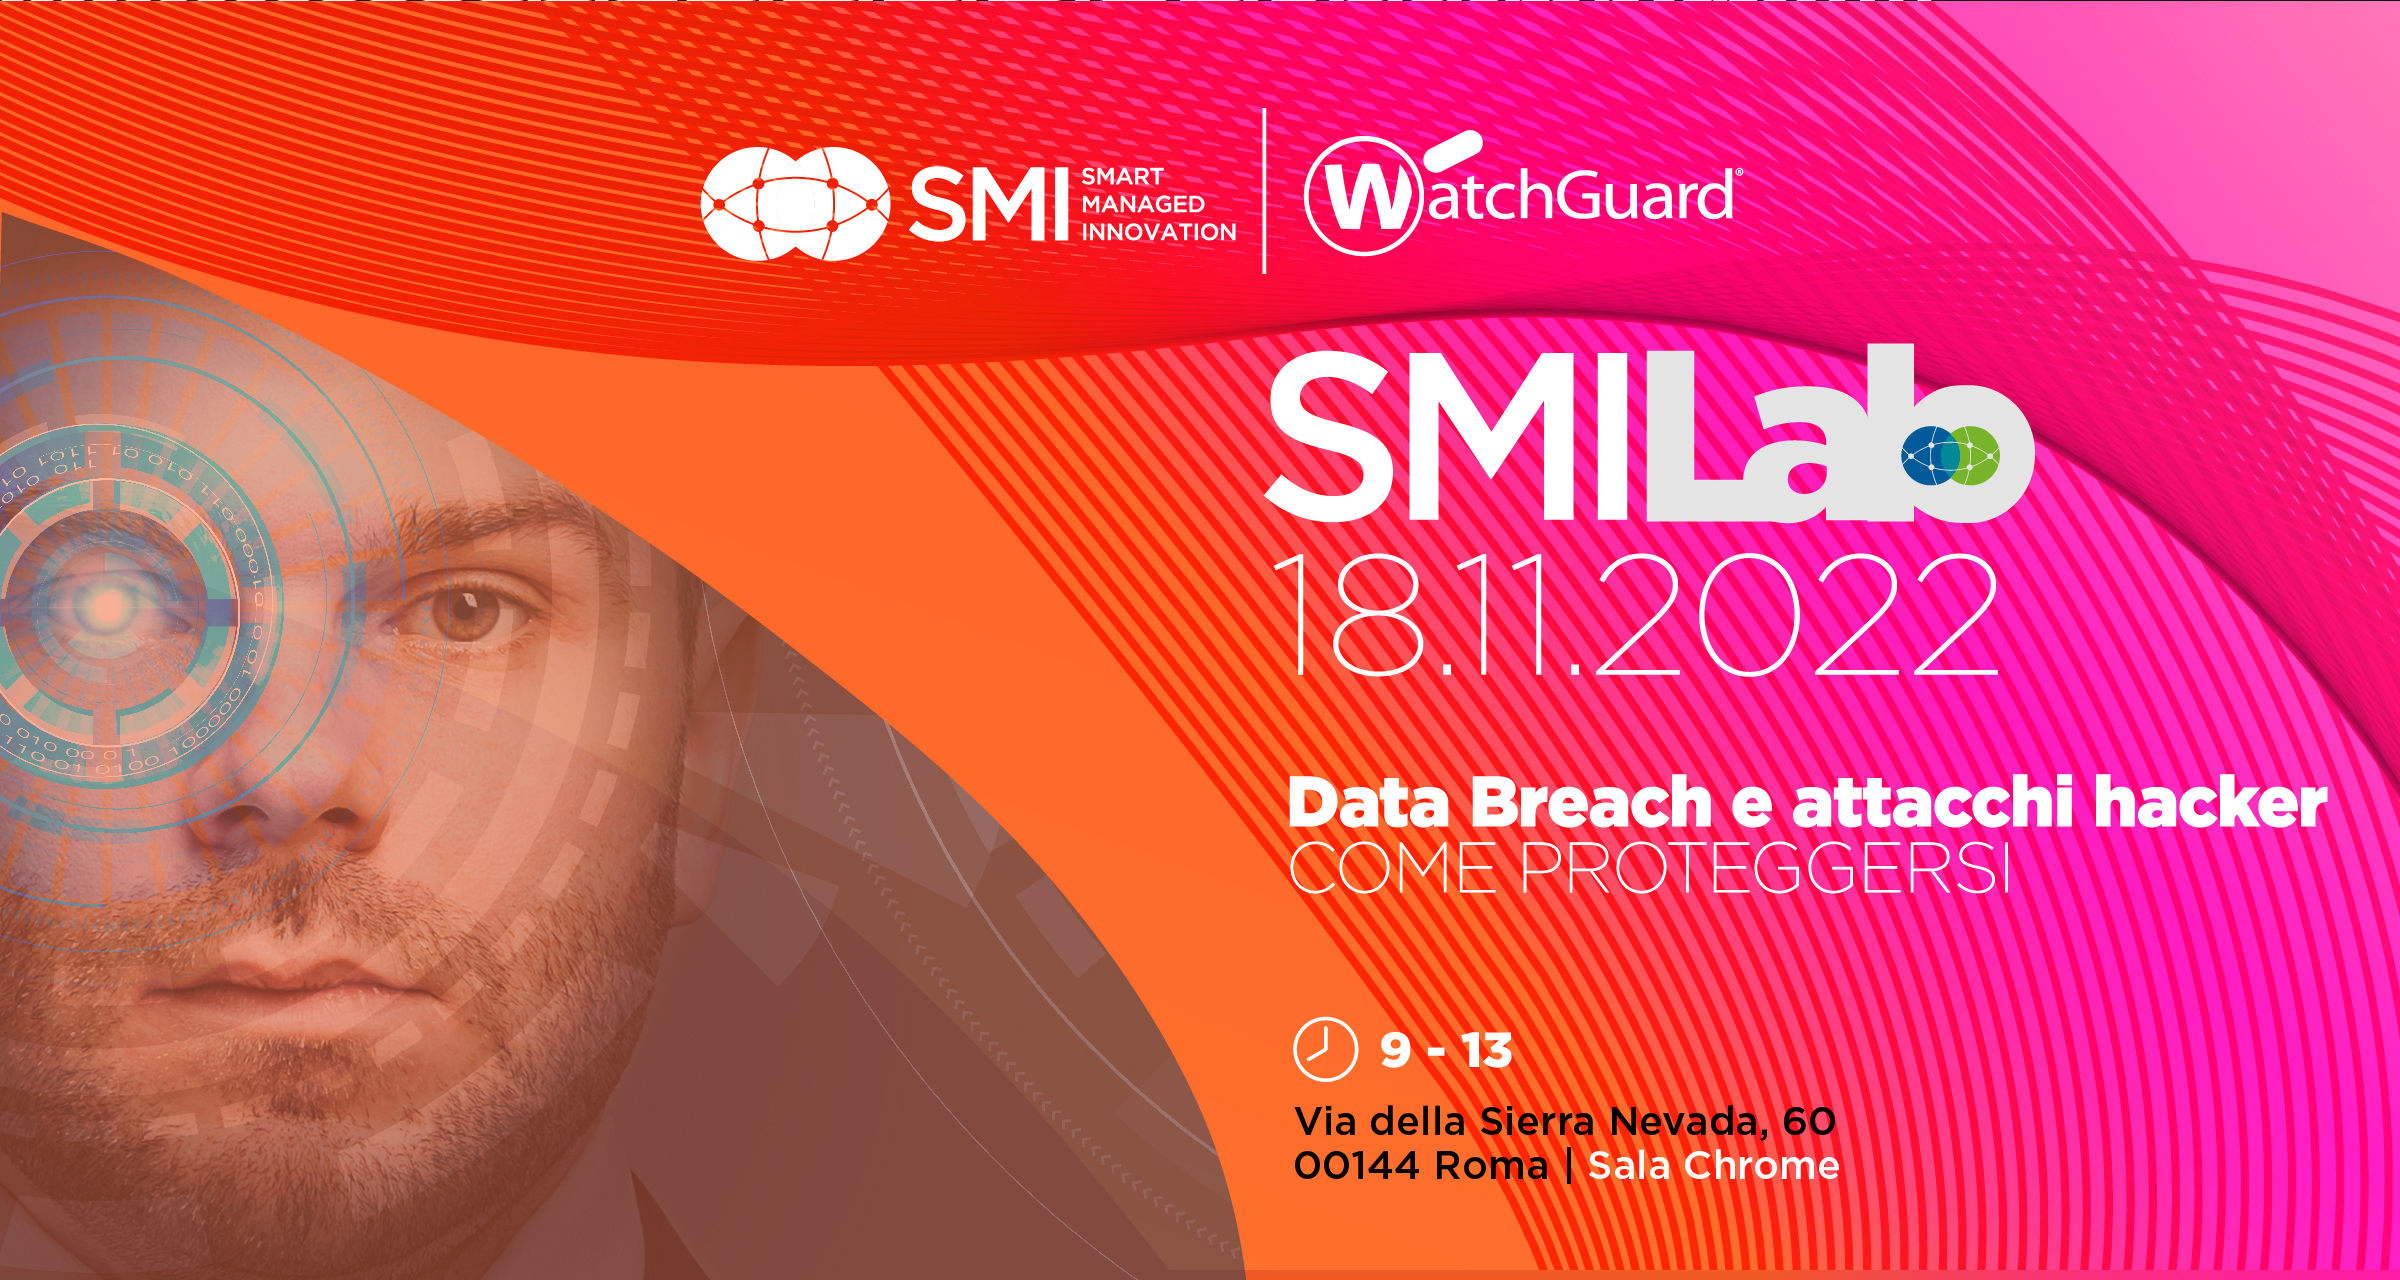 SMI LAB: Data Breach e attacchi hacker. Come proteggersi?